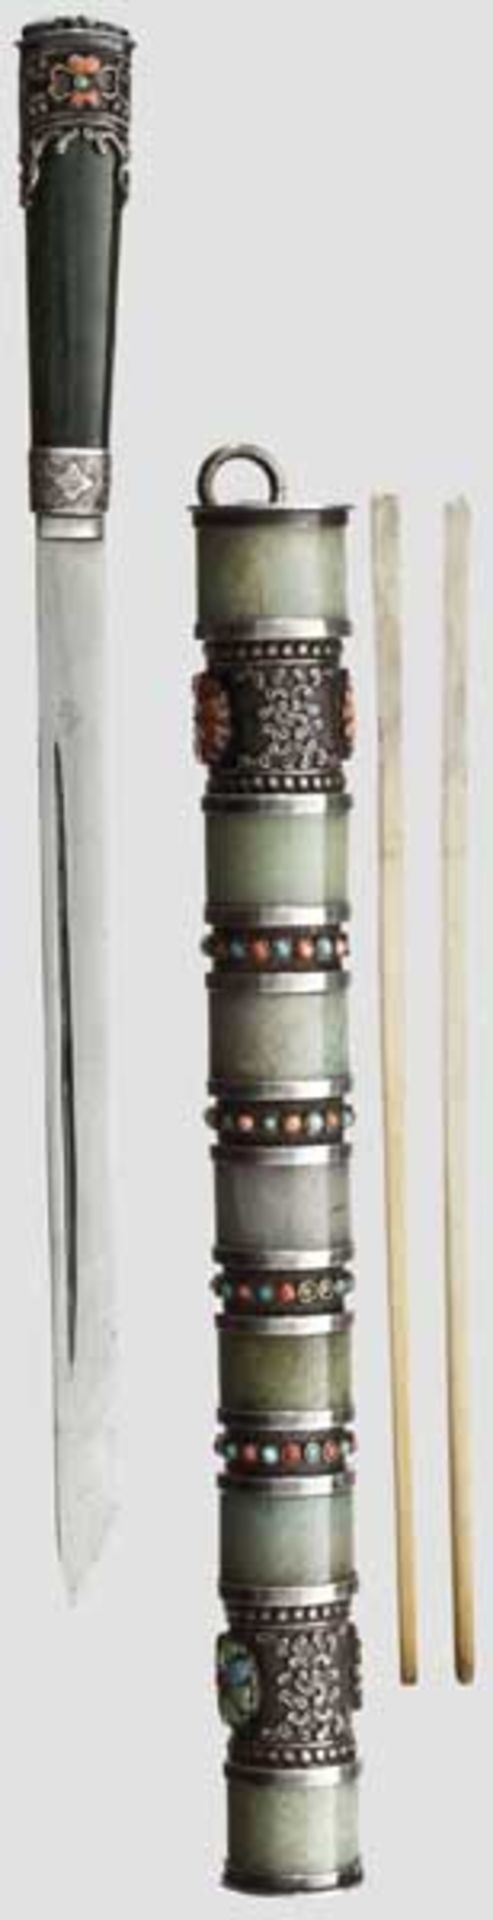 Silber- und jademontiertes Luxus-Essbesteck, sinotibetisch um 1900   Essmesser mit einseitig